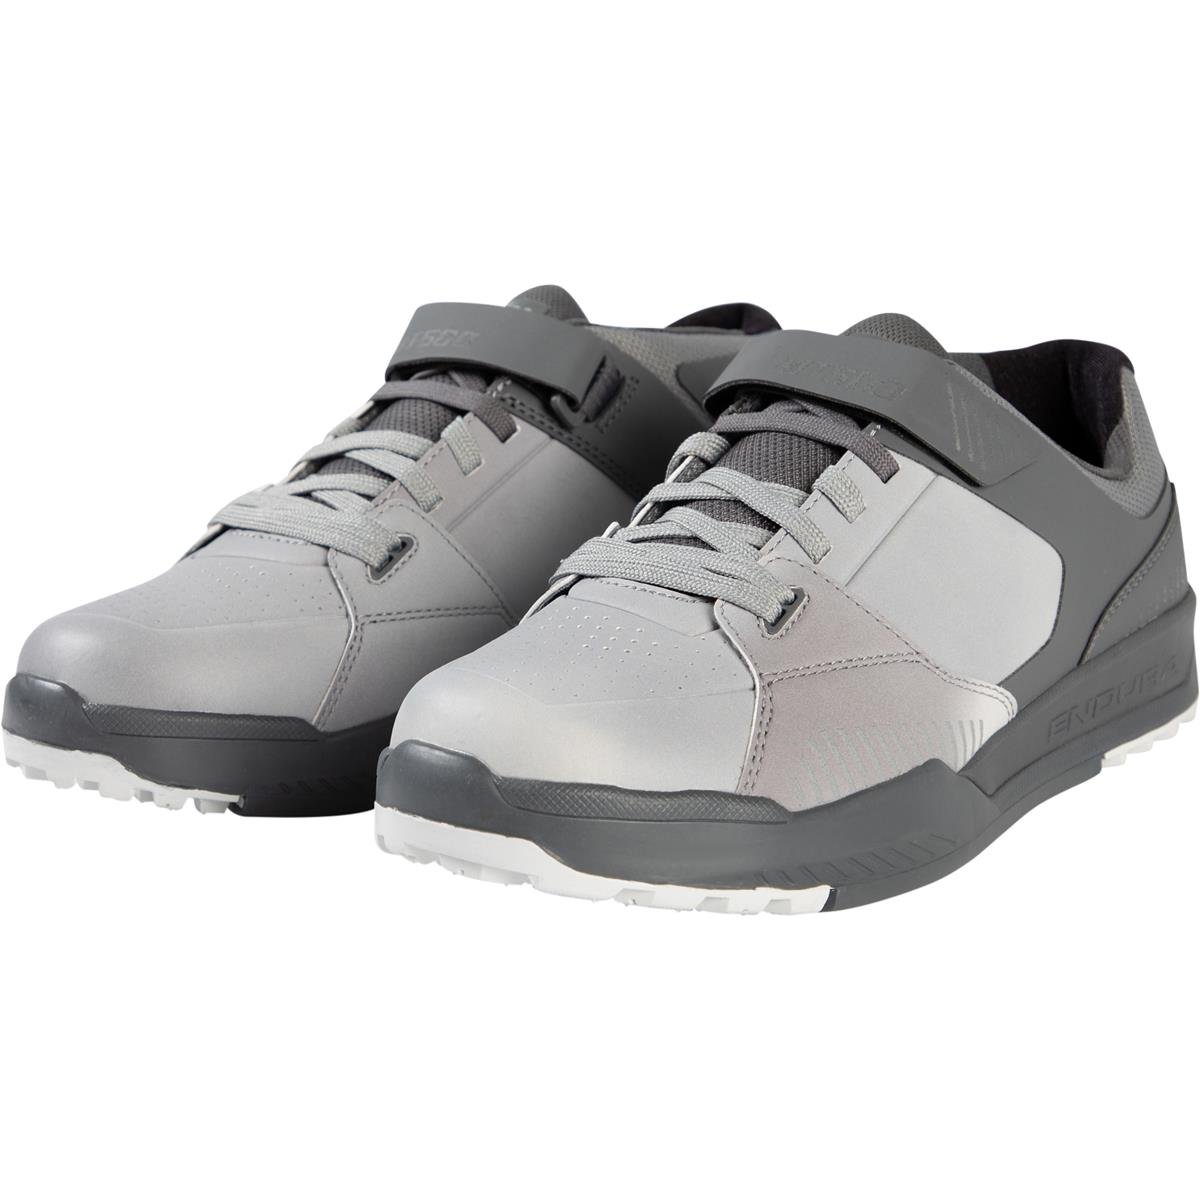 Endura Chaussures VTT MT500 Burner Clip Dreich Gray